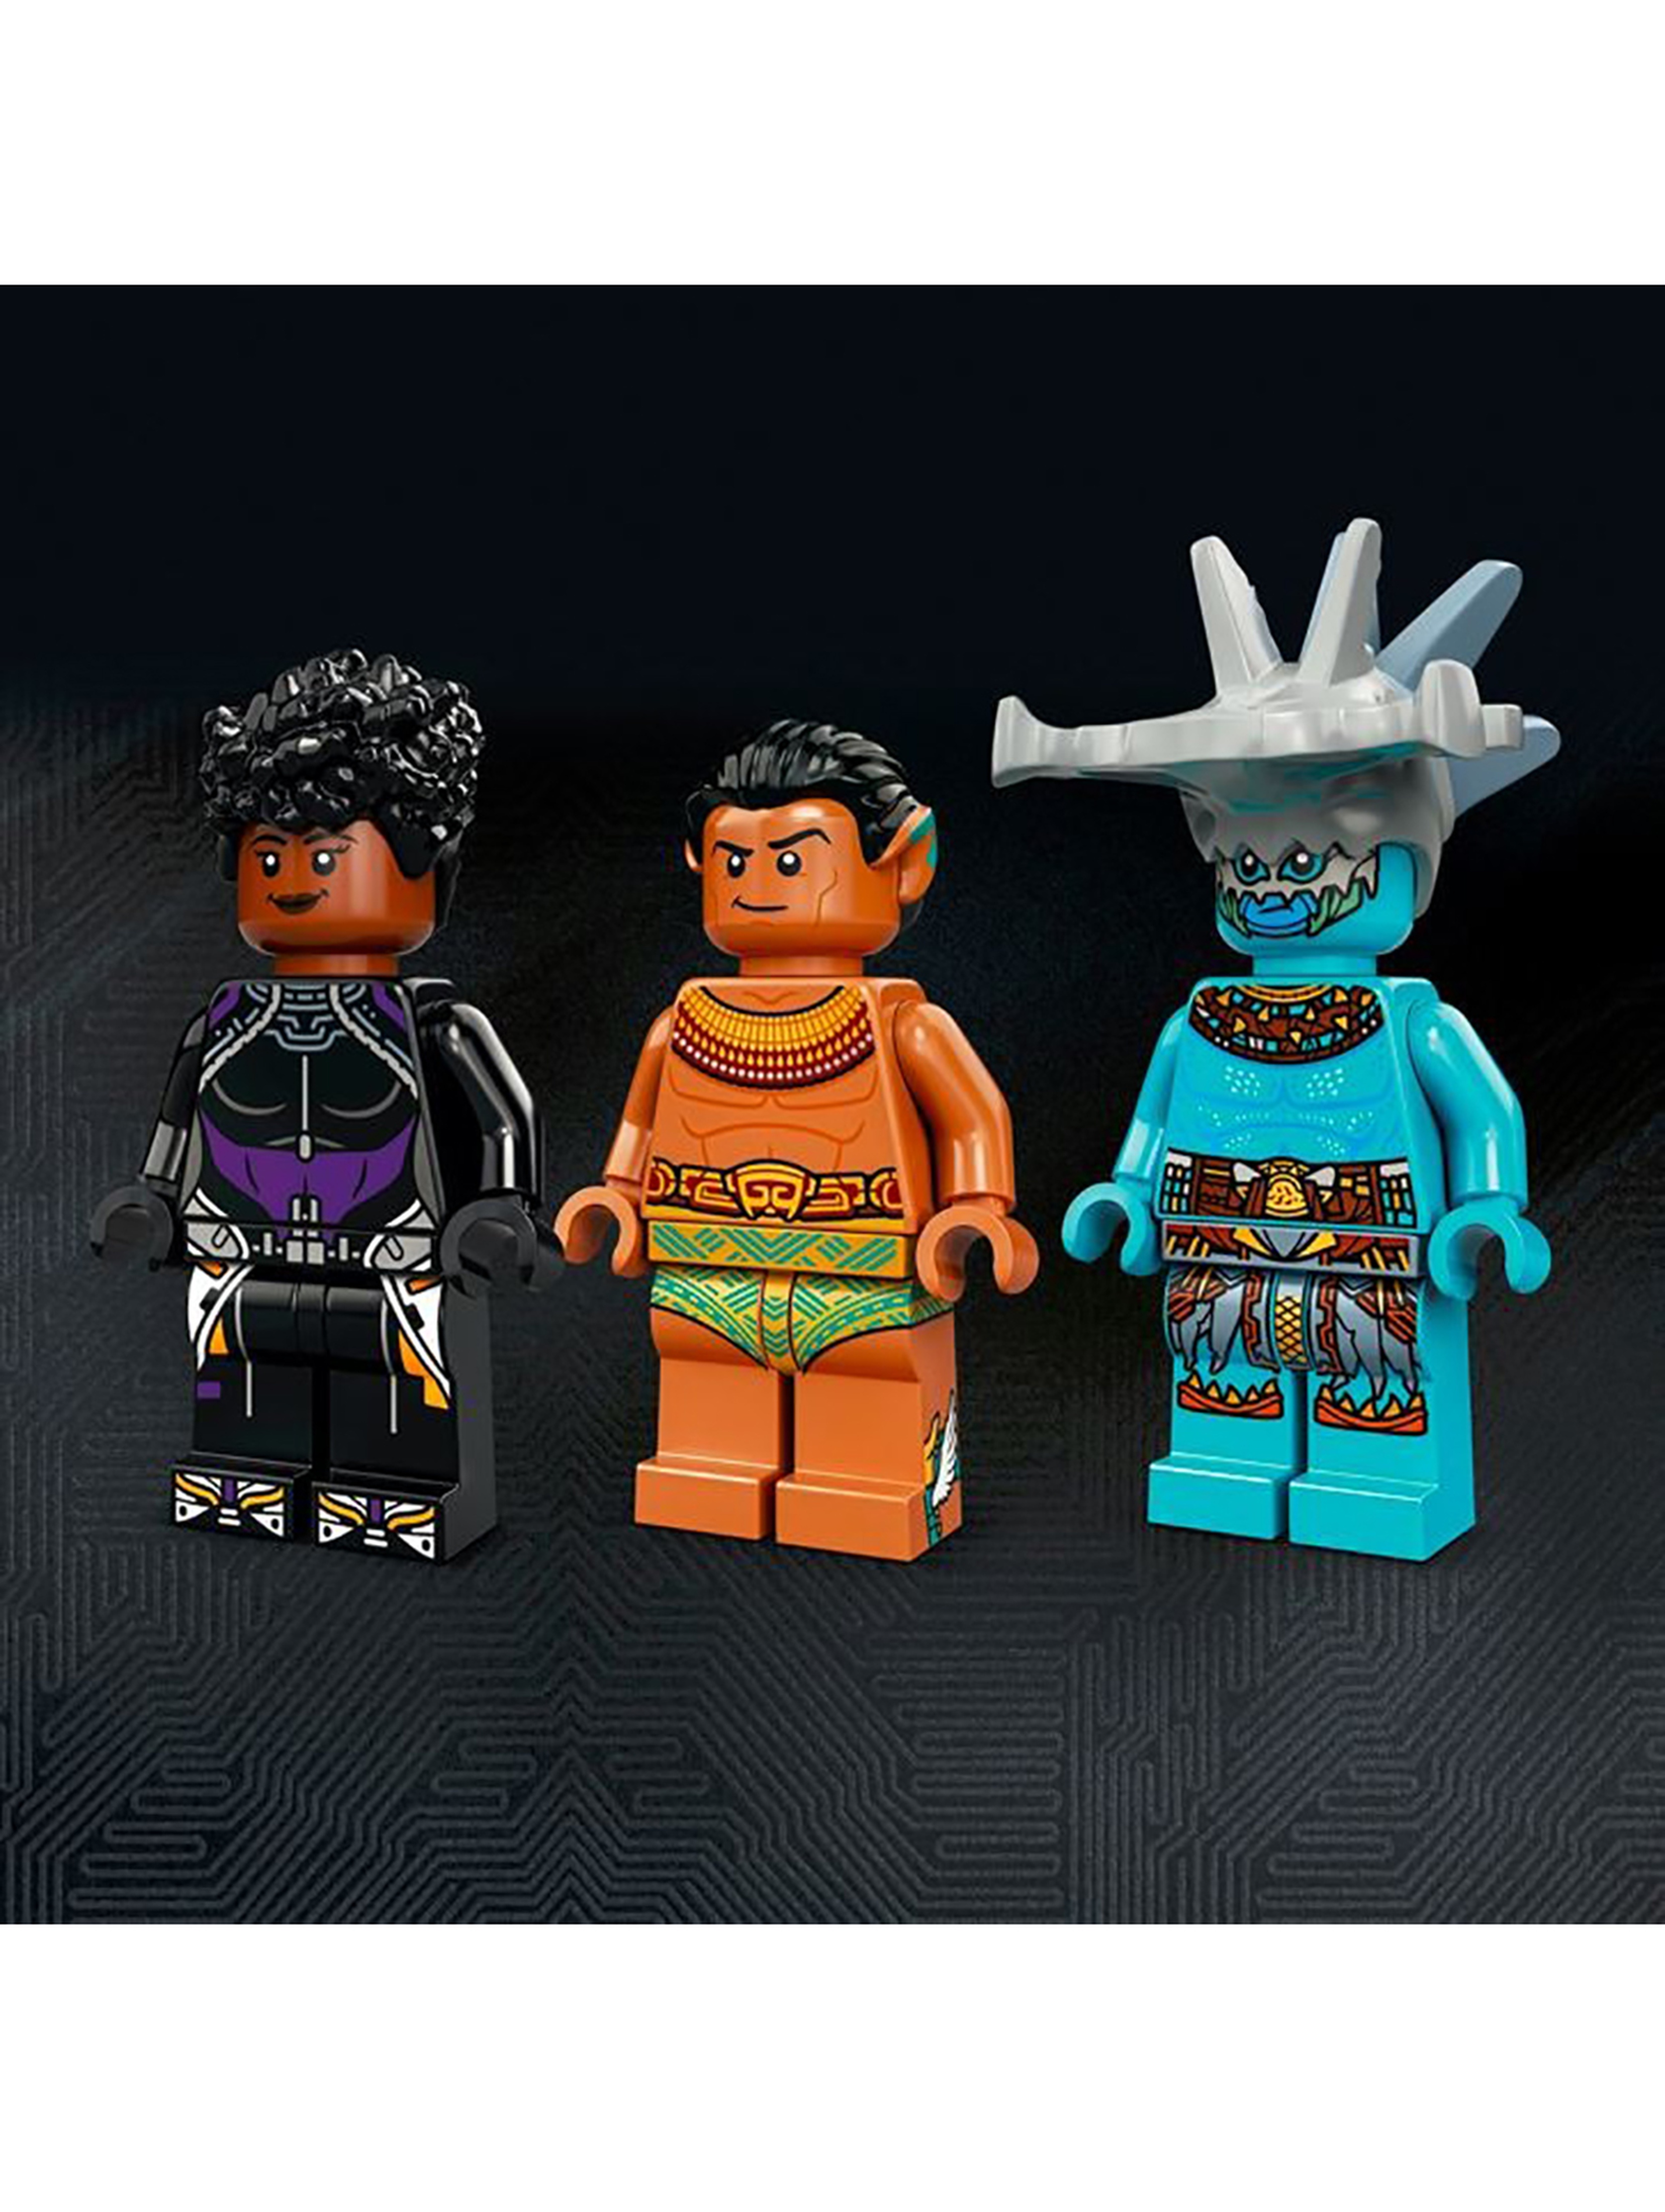 Klocki LEGO Super Heroes 76213 Sala tronowa króla Namora - 355 elementy, wiek 7 +